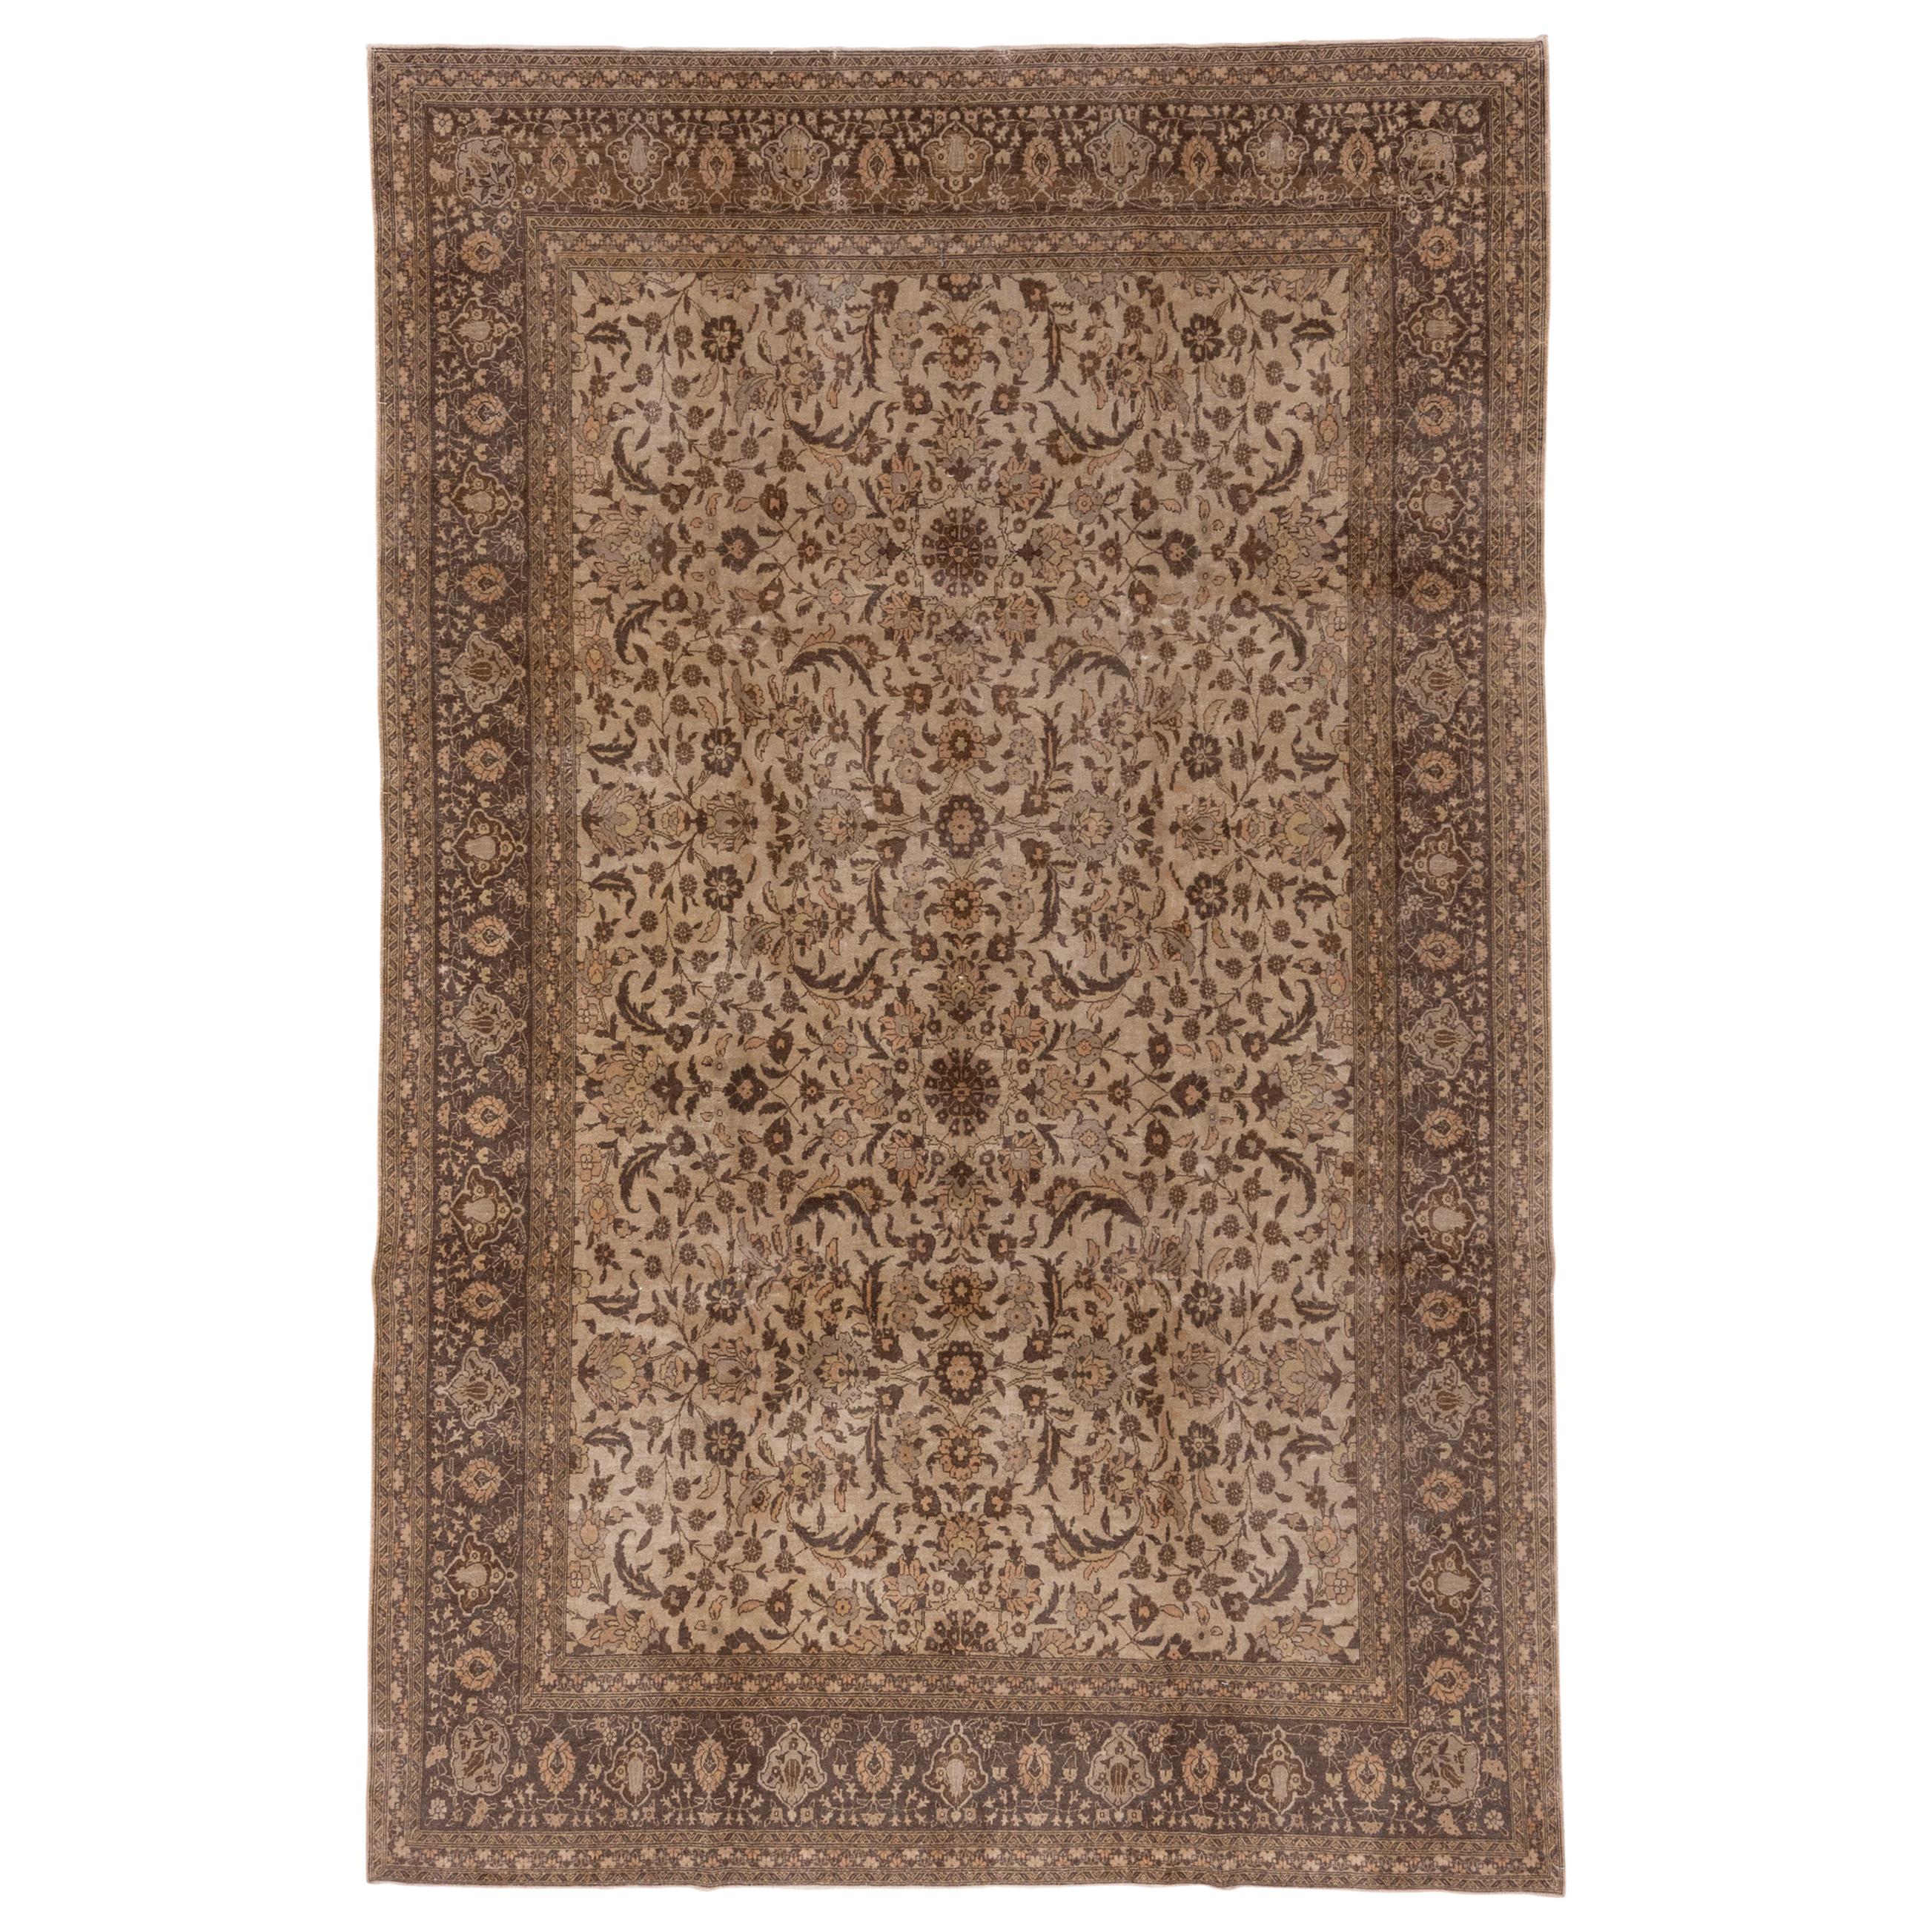 Fine Antique Turkish Sivas Carpet, Brown Palette, Allover Field For Sale